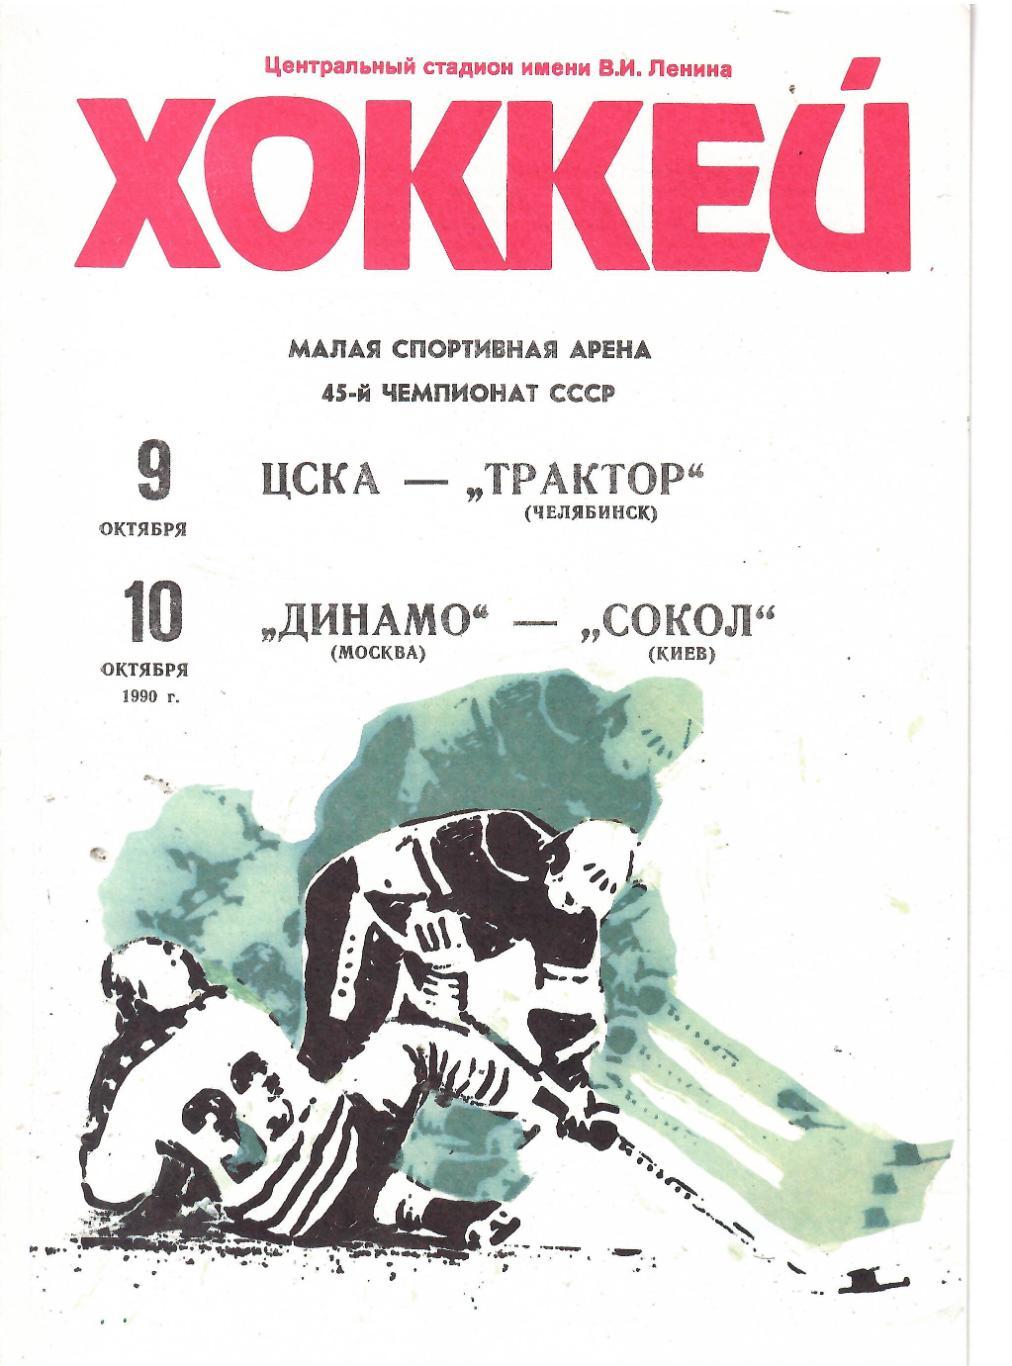 1990 Хоккей ЦСКА - Трактор - Динамо Москва - Сокол